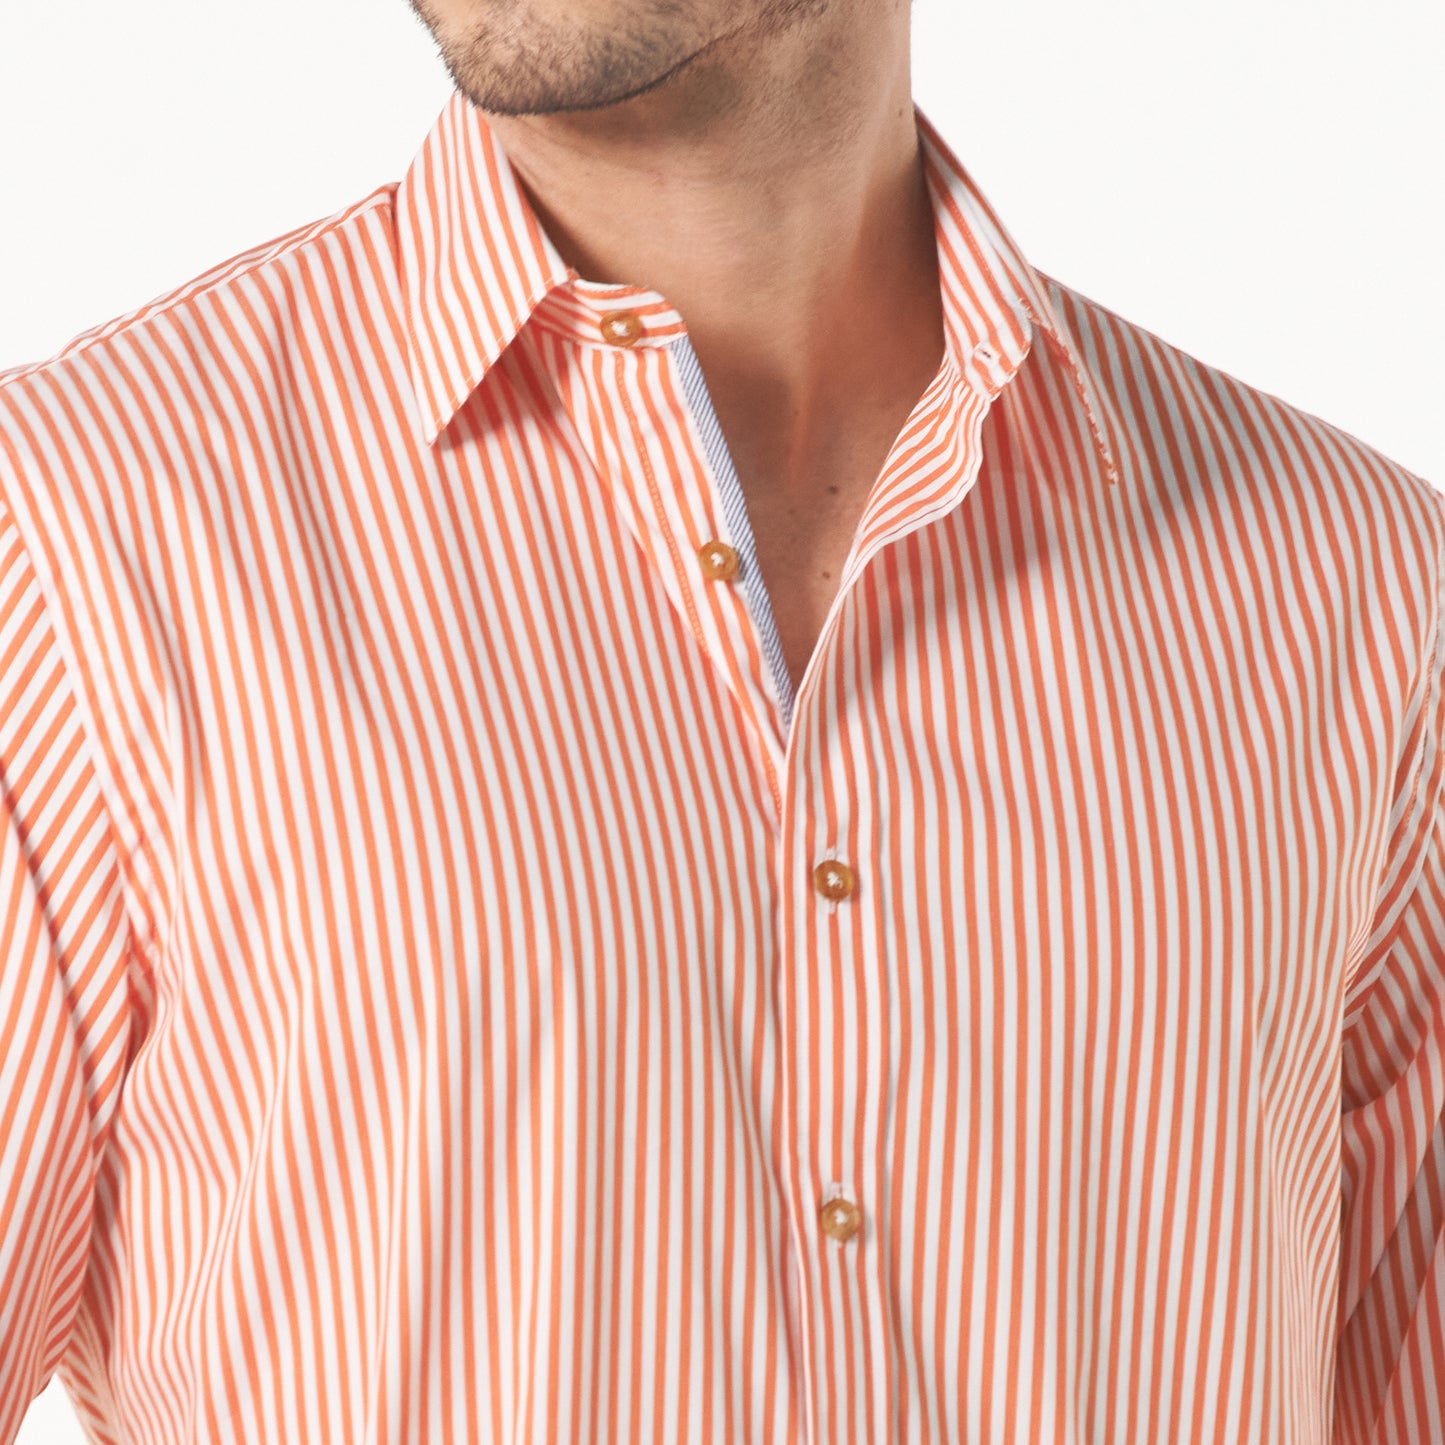 Camisa manga larga a rayas color naranja